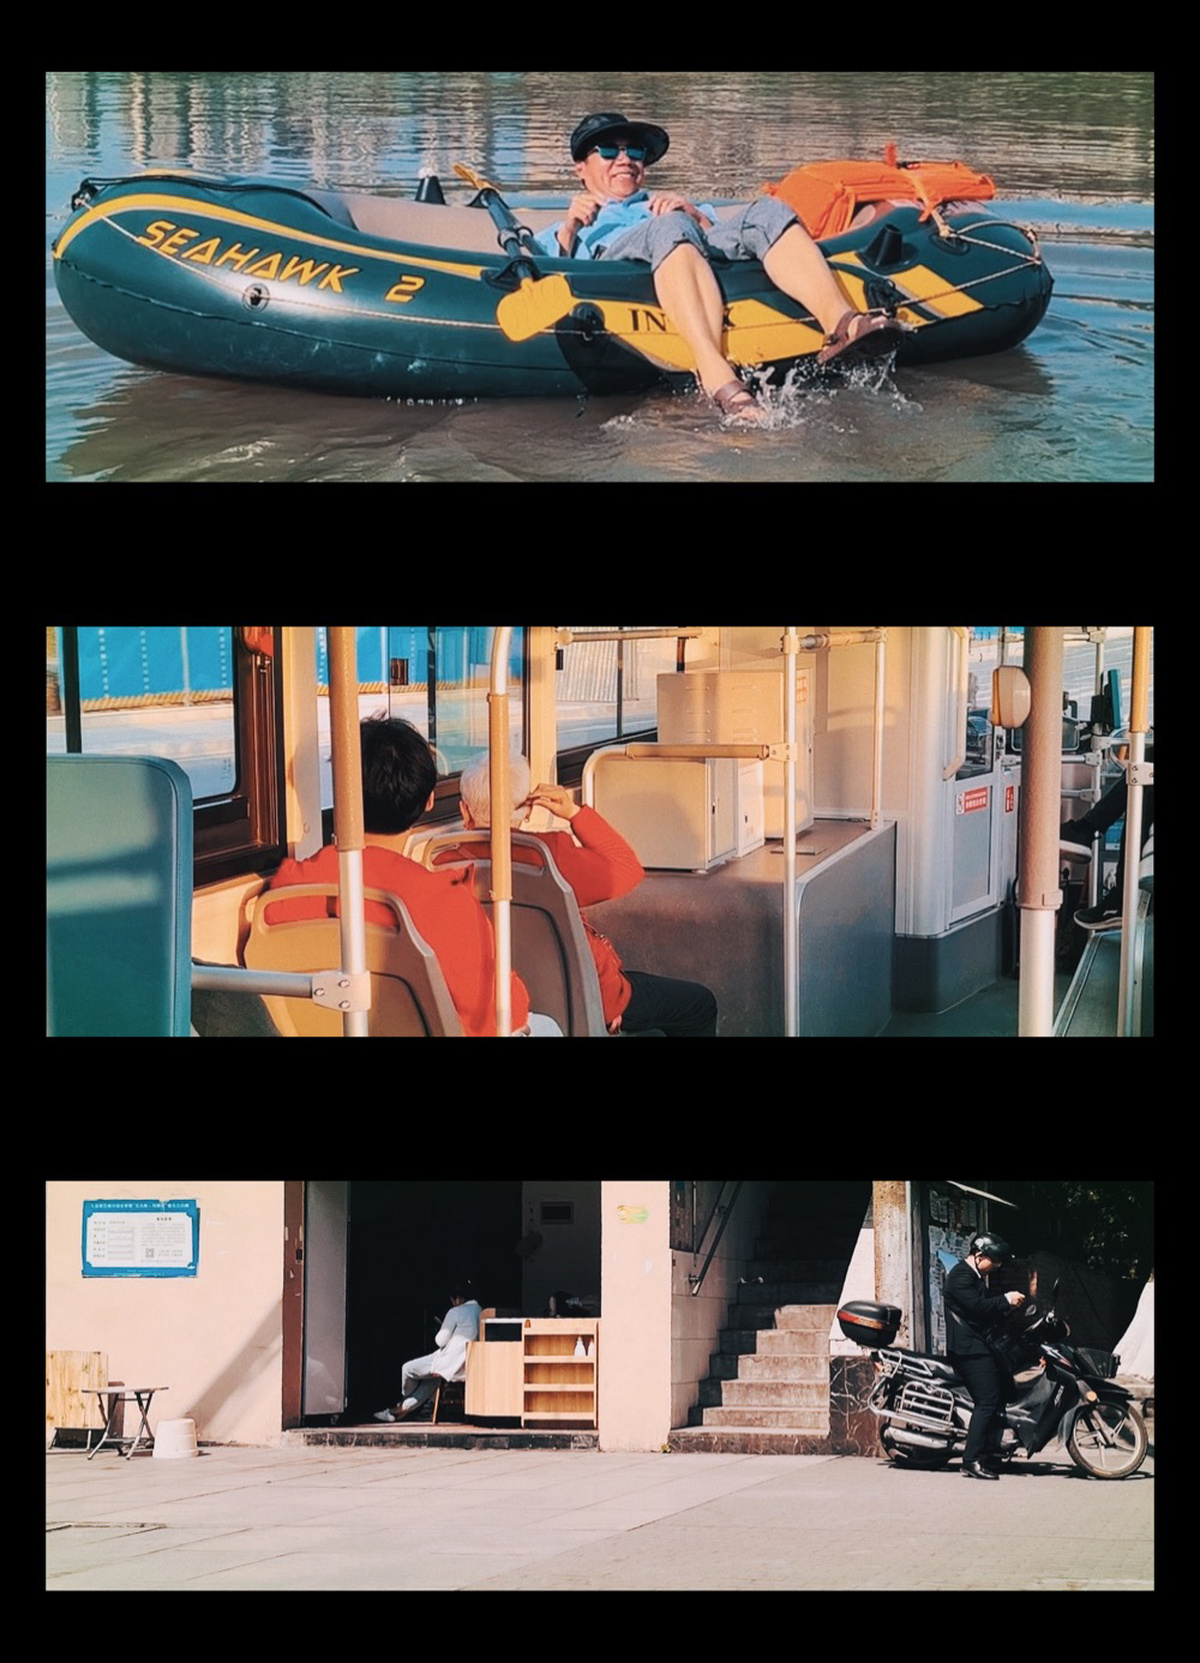 一系列照片展示了一个男人驾驶小船和男孩在水上骑摩托车。